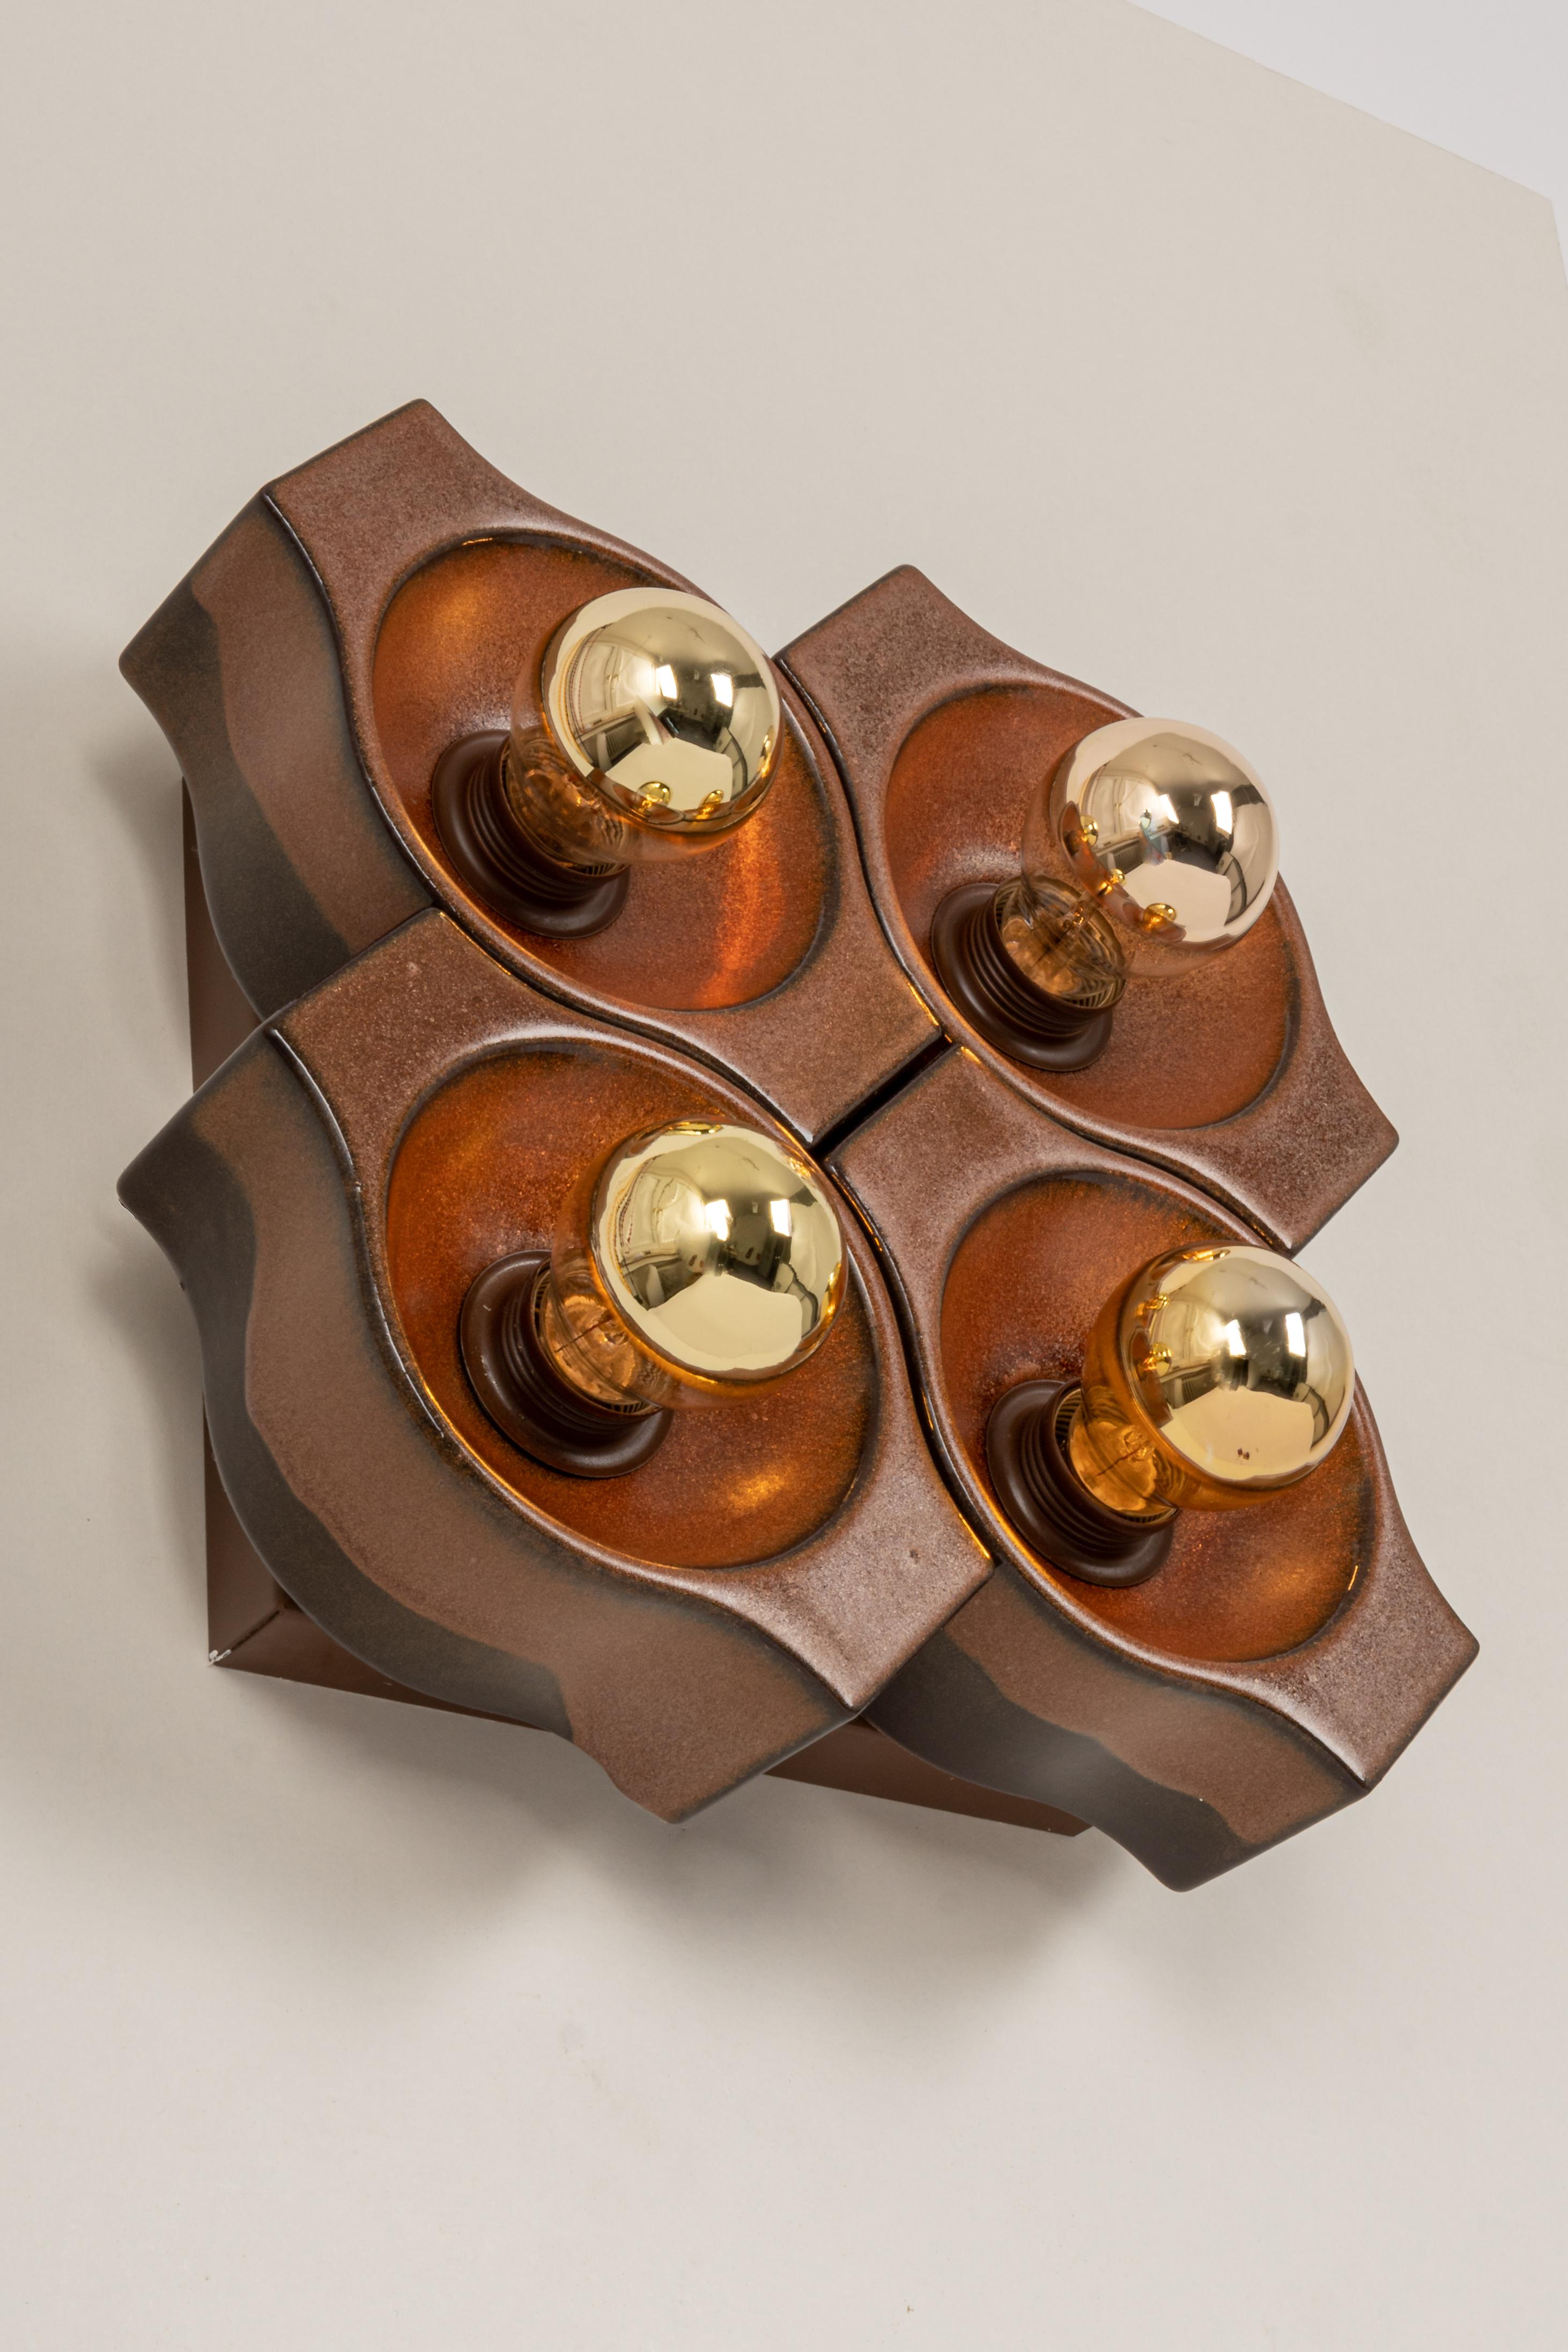 Ensemble de 4 appliques en céramique brune Sputnik conçu par Cari Zalloni Allemagne, années 1970
De grande qualité et en très bon état. Nettoyé, bien câblé et prêt à être utilisé. 
Ces appliques ne peuvent être montées qu'en kit.

Chaque